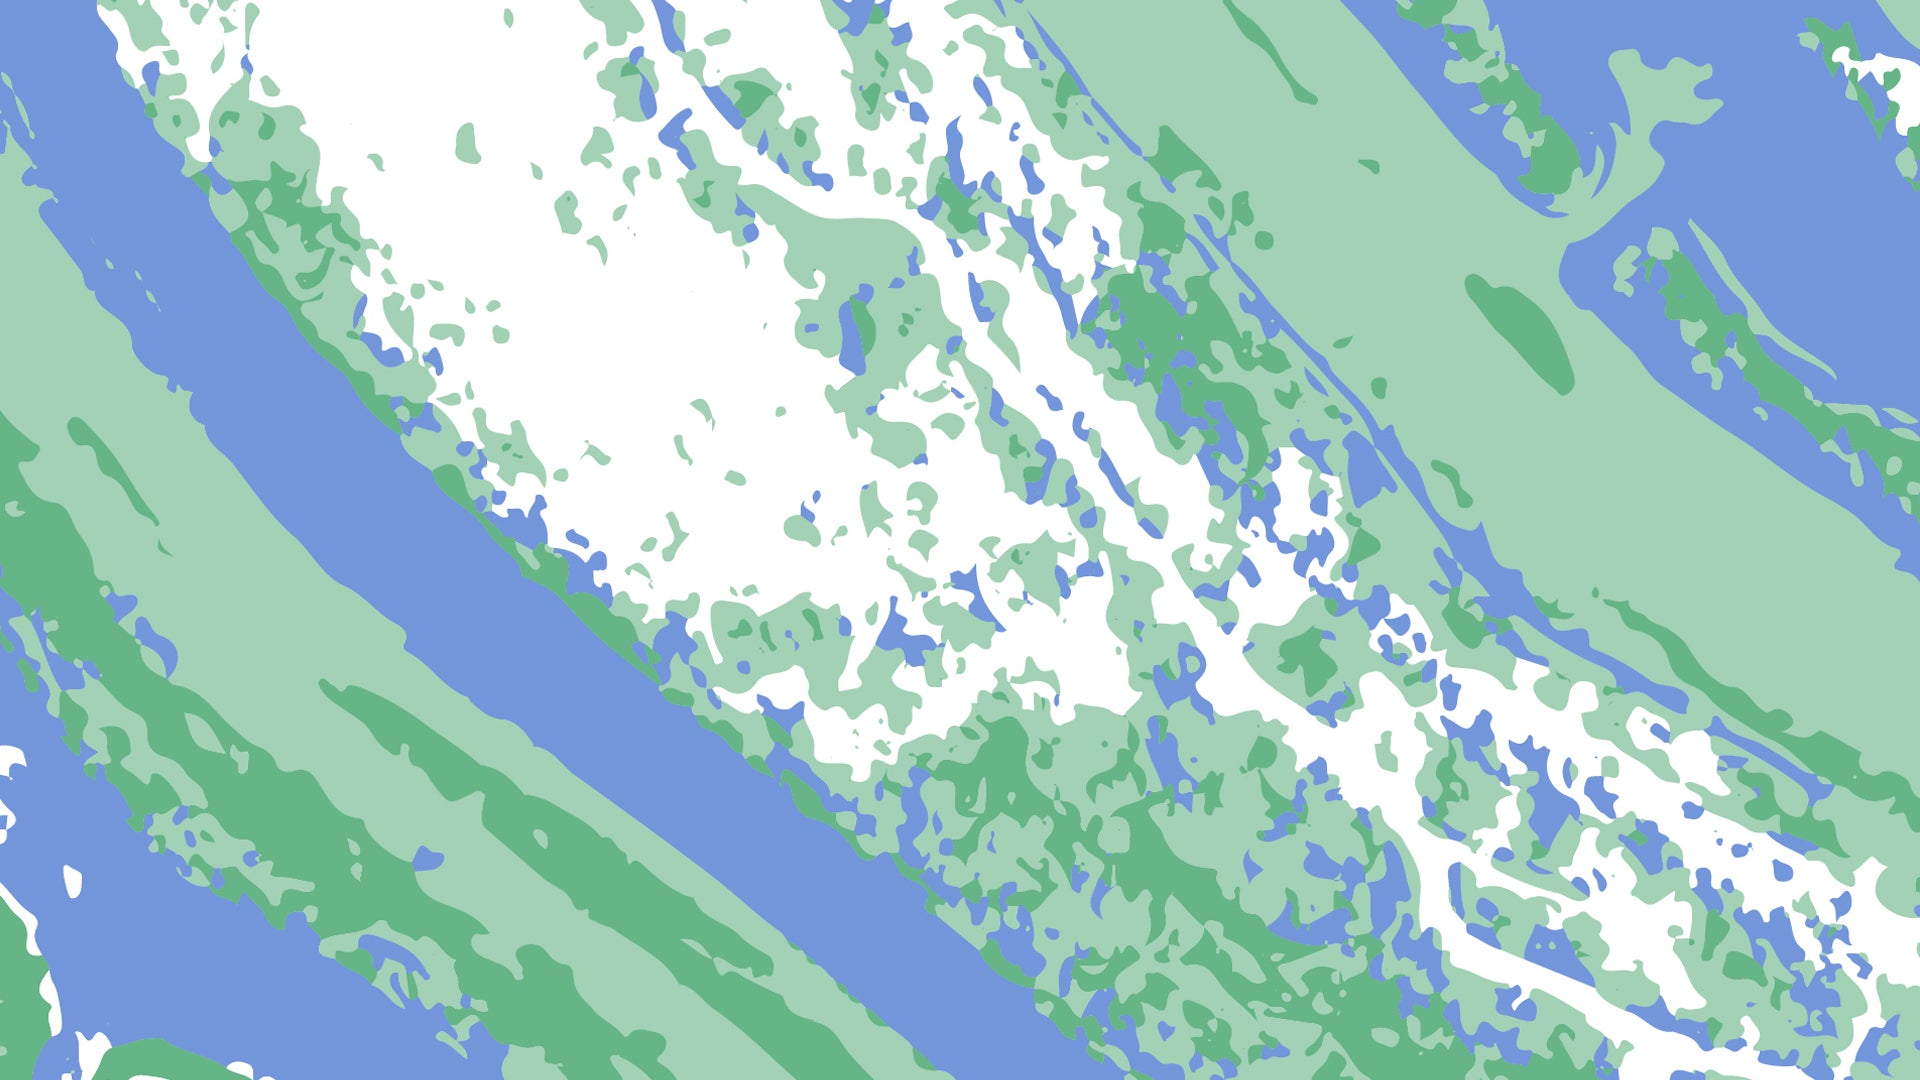 Ilustración en verde, azul y blanco de la marisma vista desde arriba.